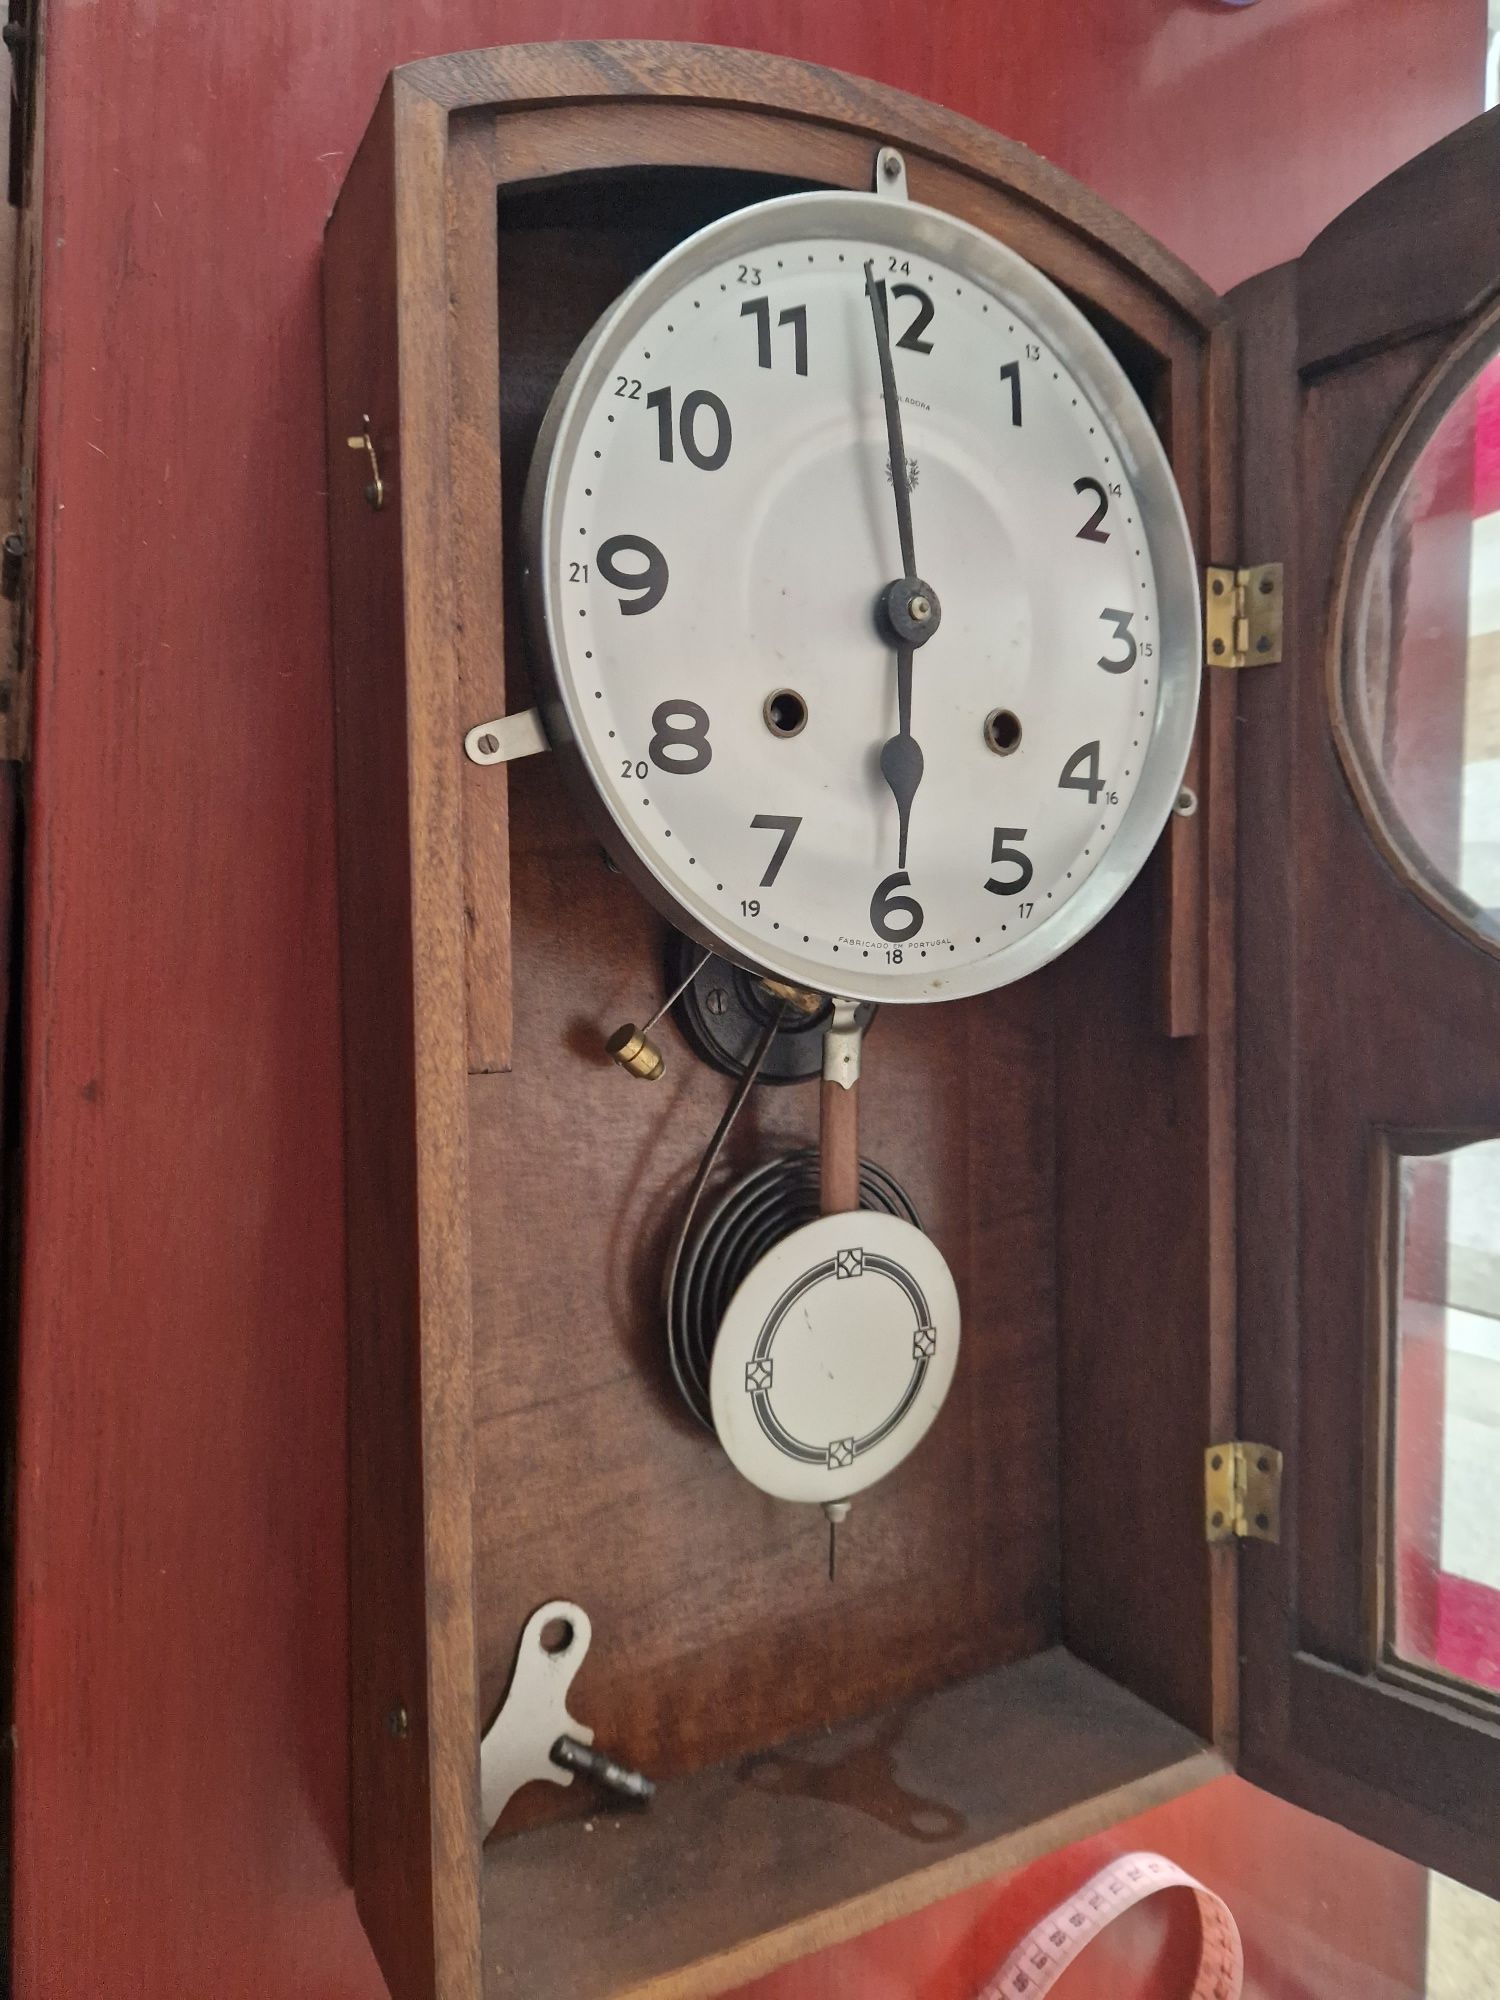 Relógio reguladora antigo vintage a funcionar com chave

Altura:
48cm